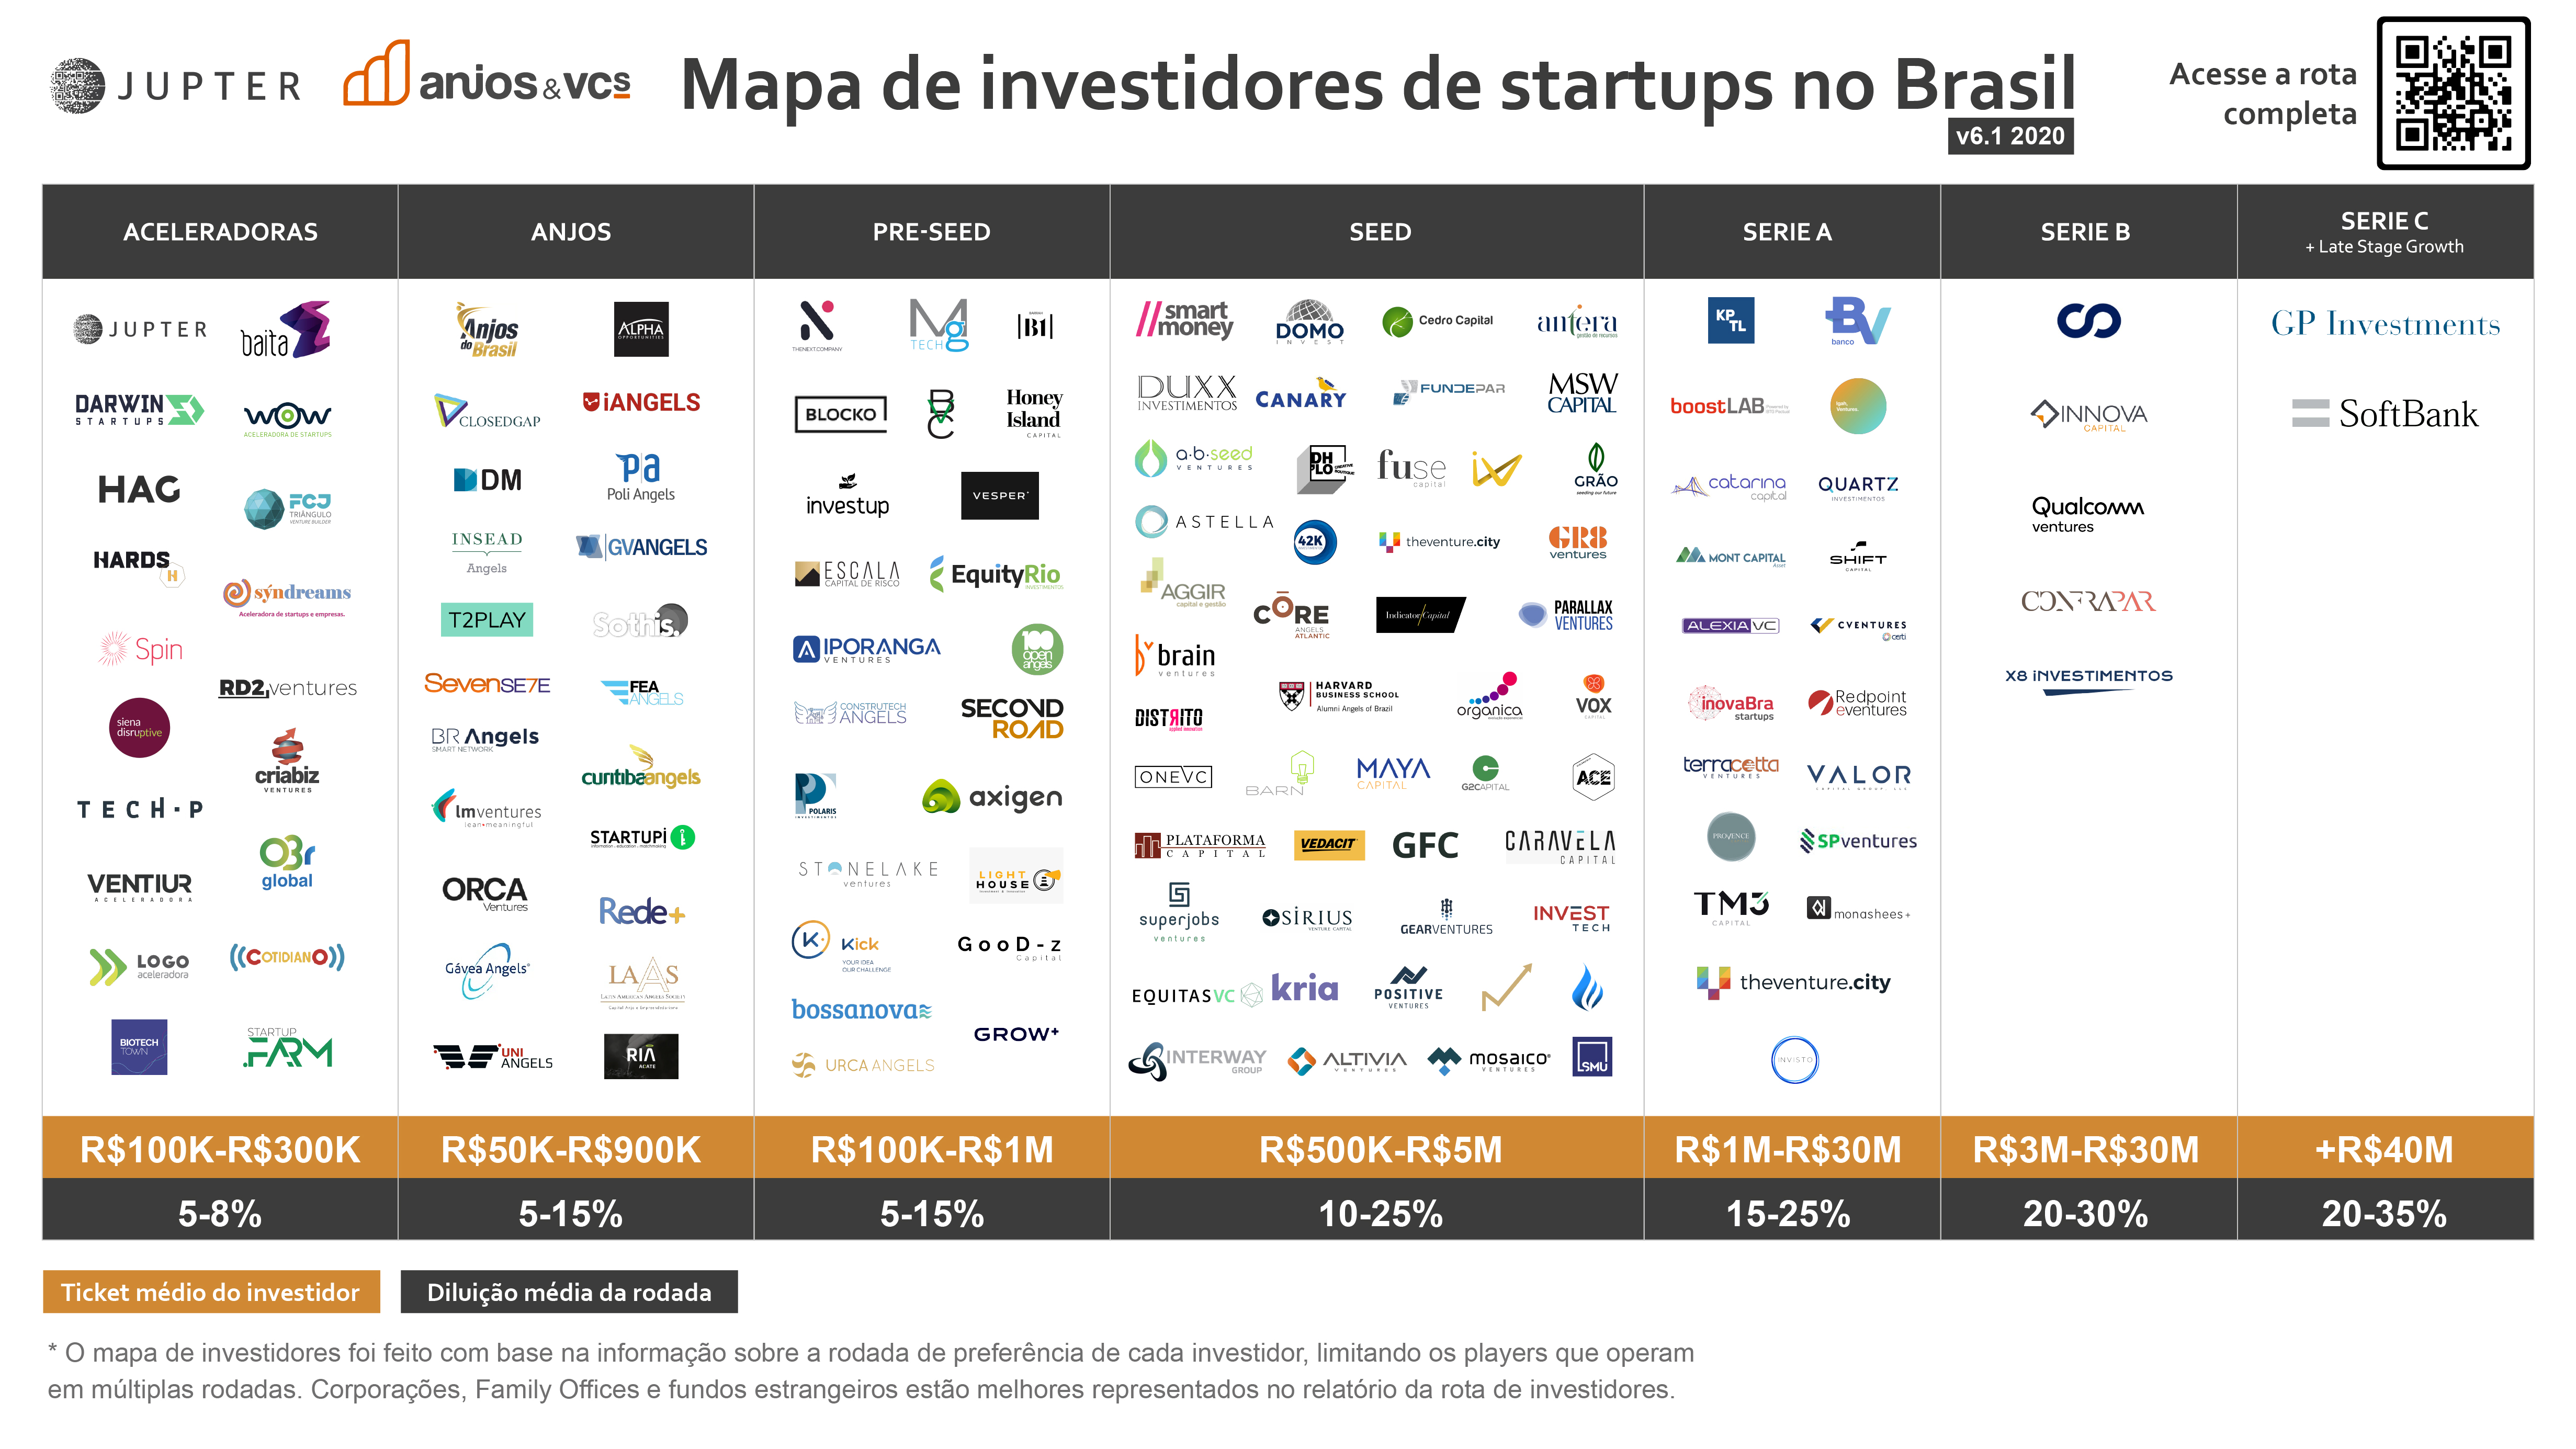 Mapa de Investidores de Startups no Brasil 2020 v6.1 